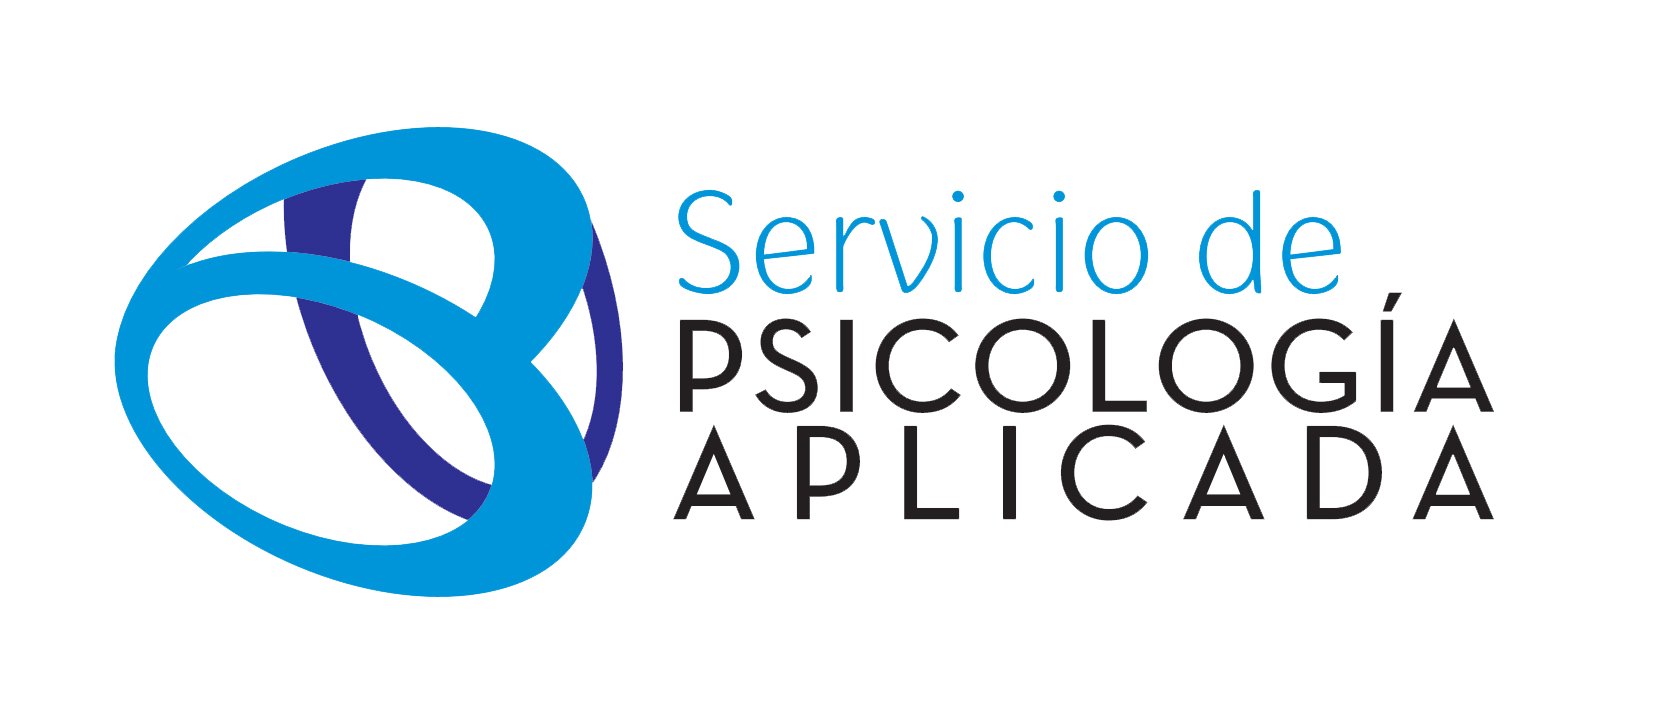 Servicio de Psicología Aplicada (SEPA)